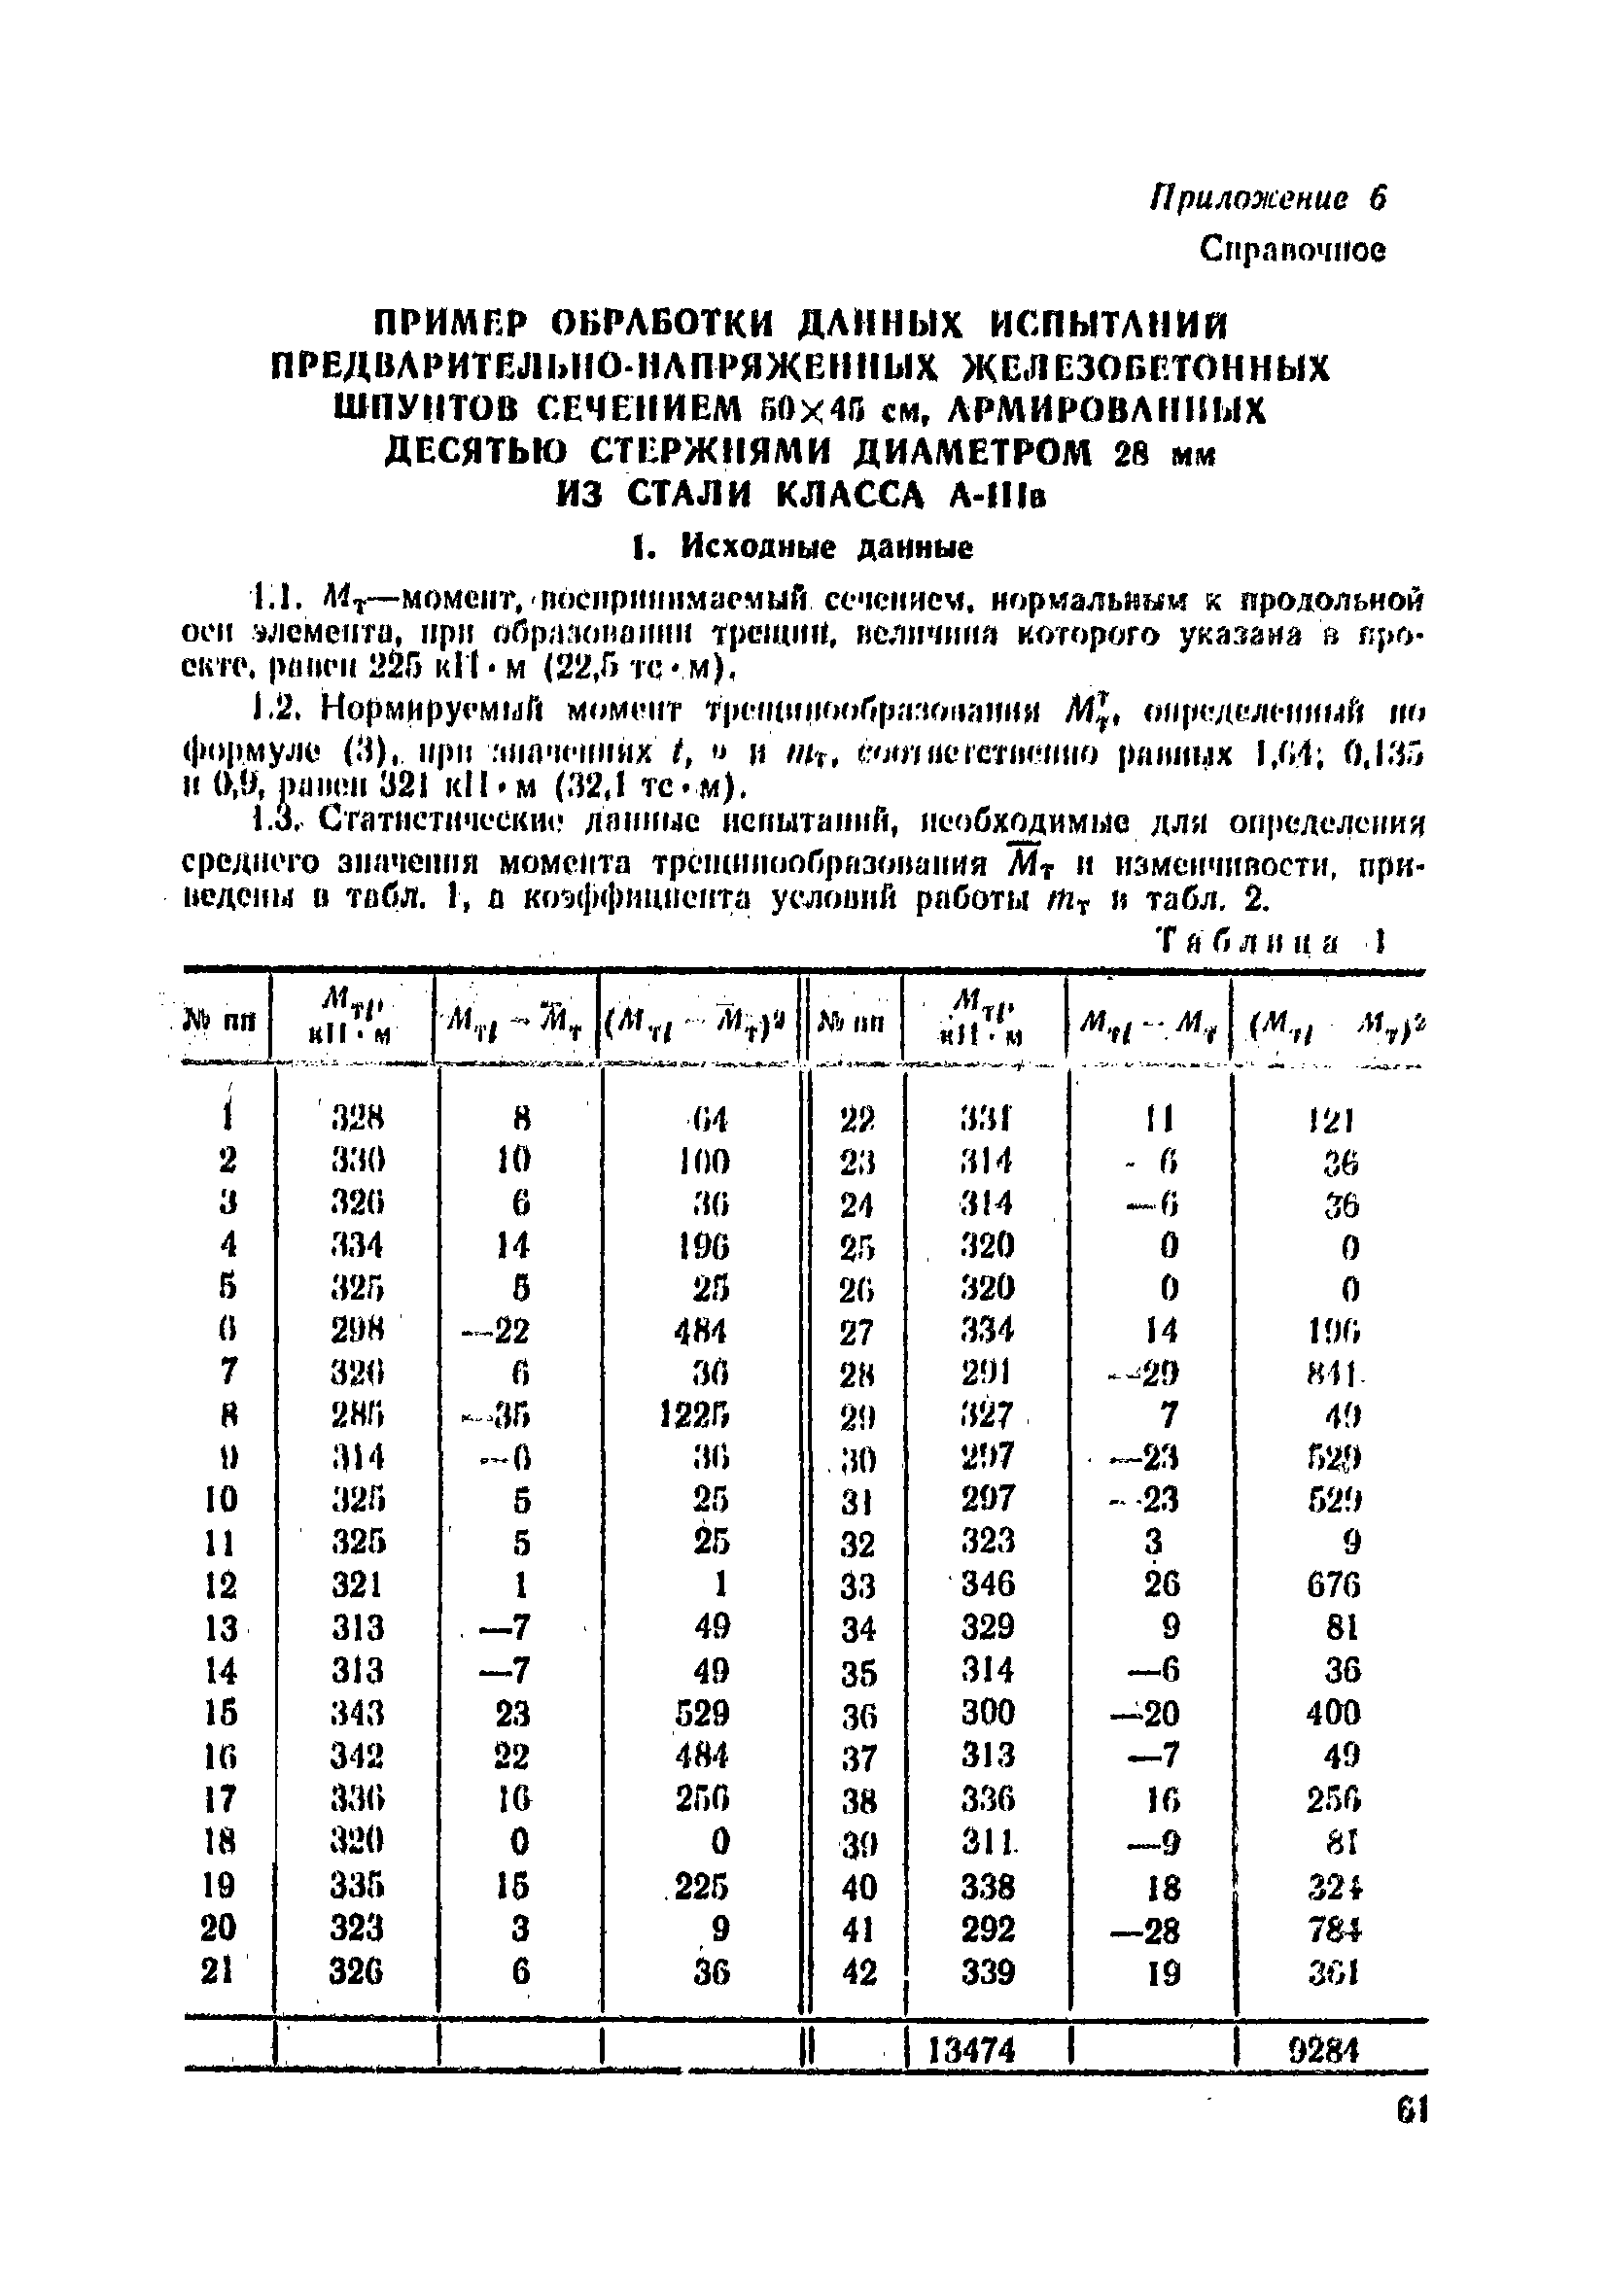 ВСН 34/VIII-82